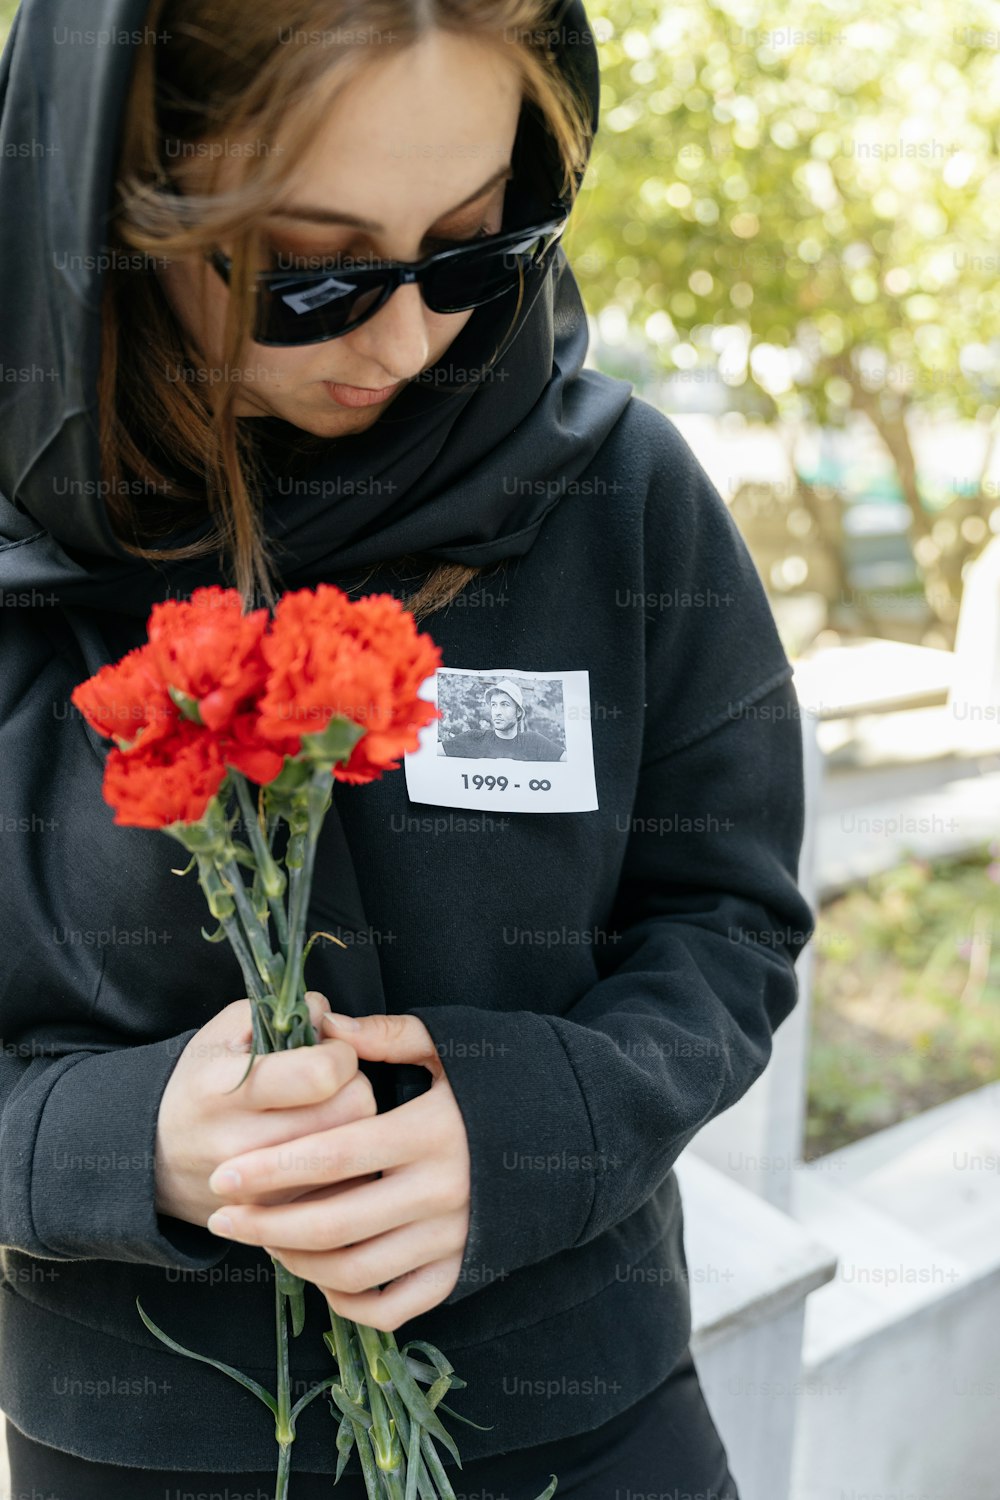 una mujer con una sudadera con capucha sosteniendo un ramo de flores